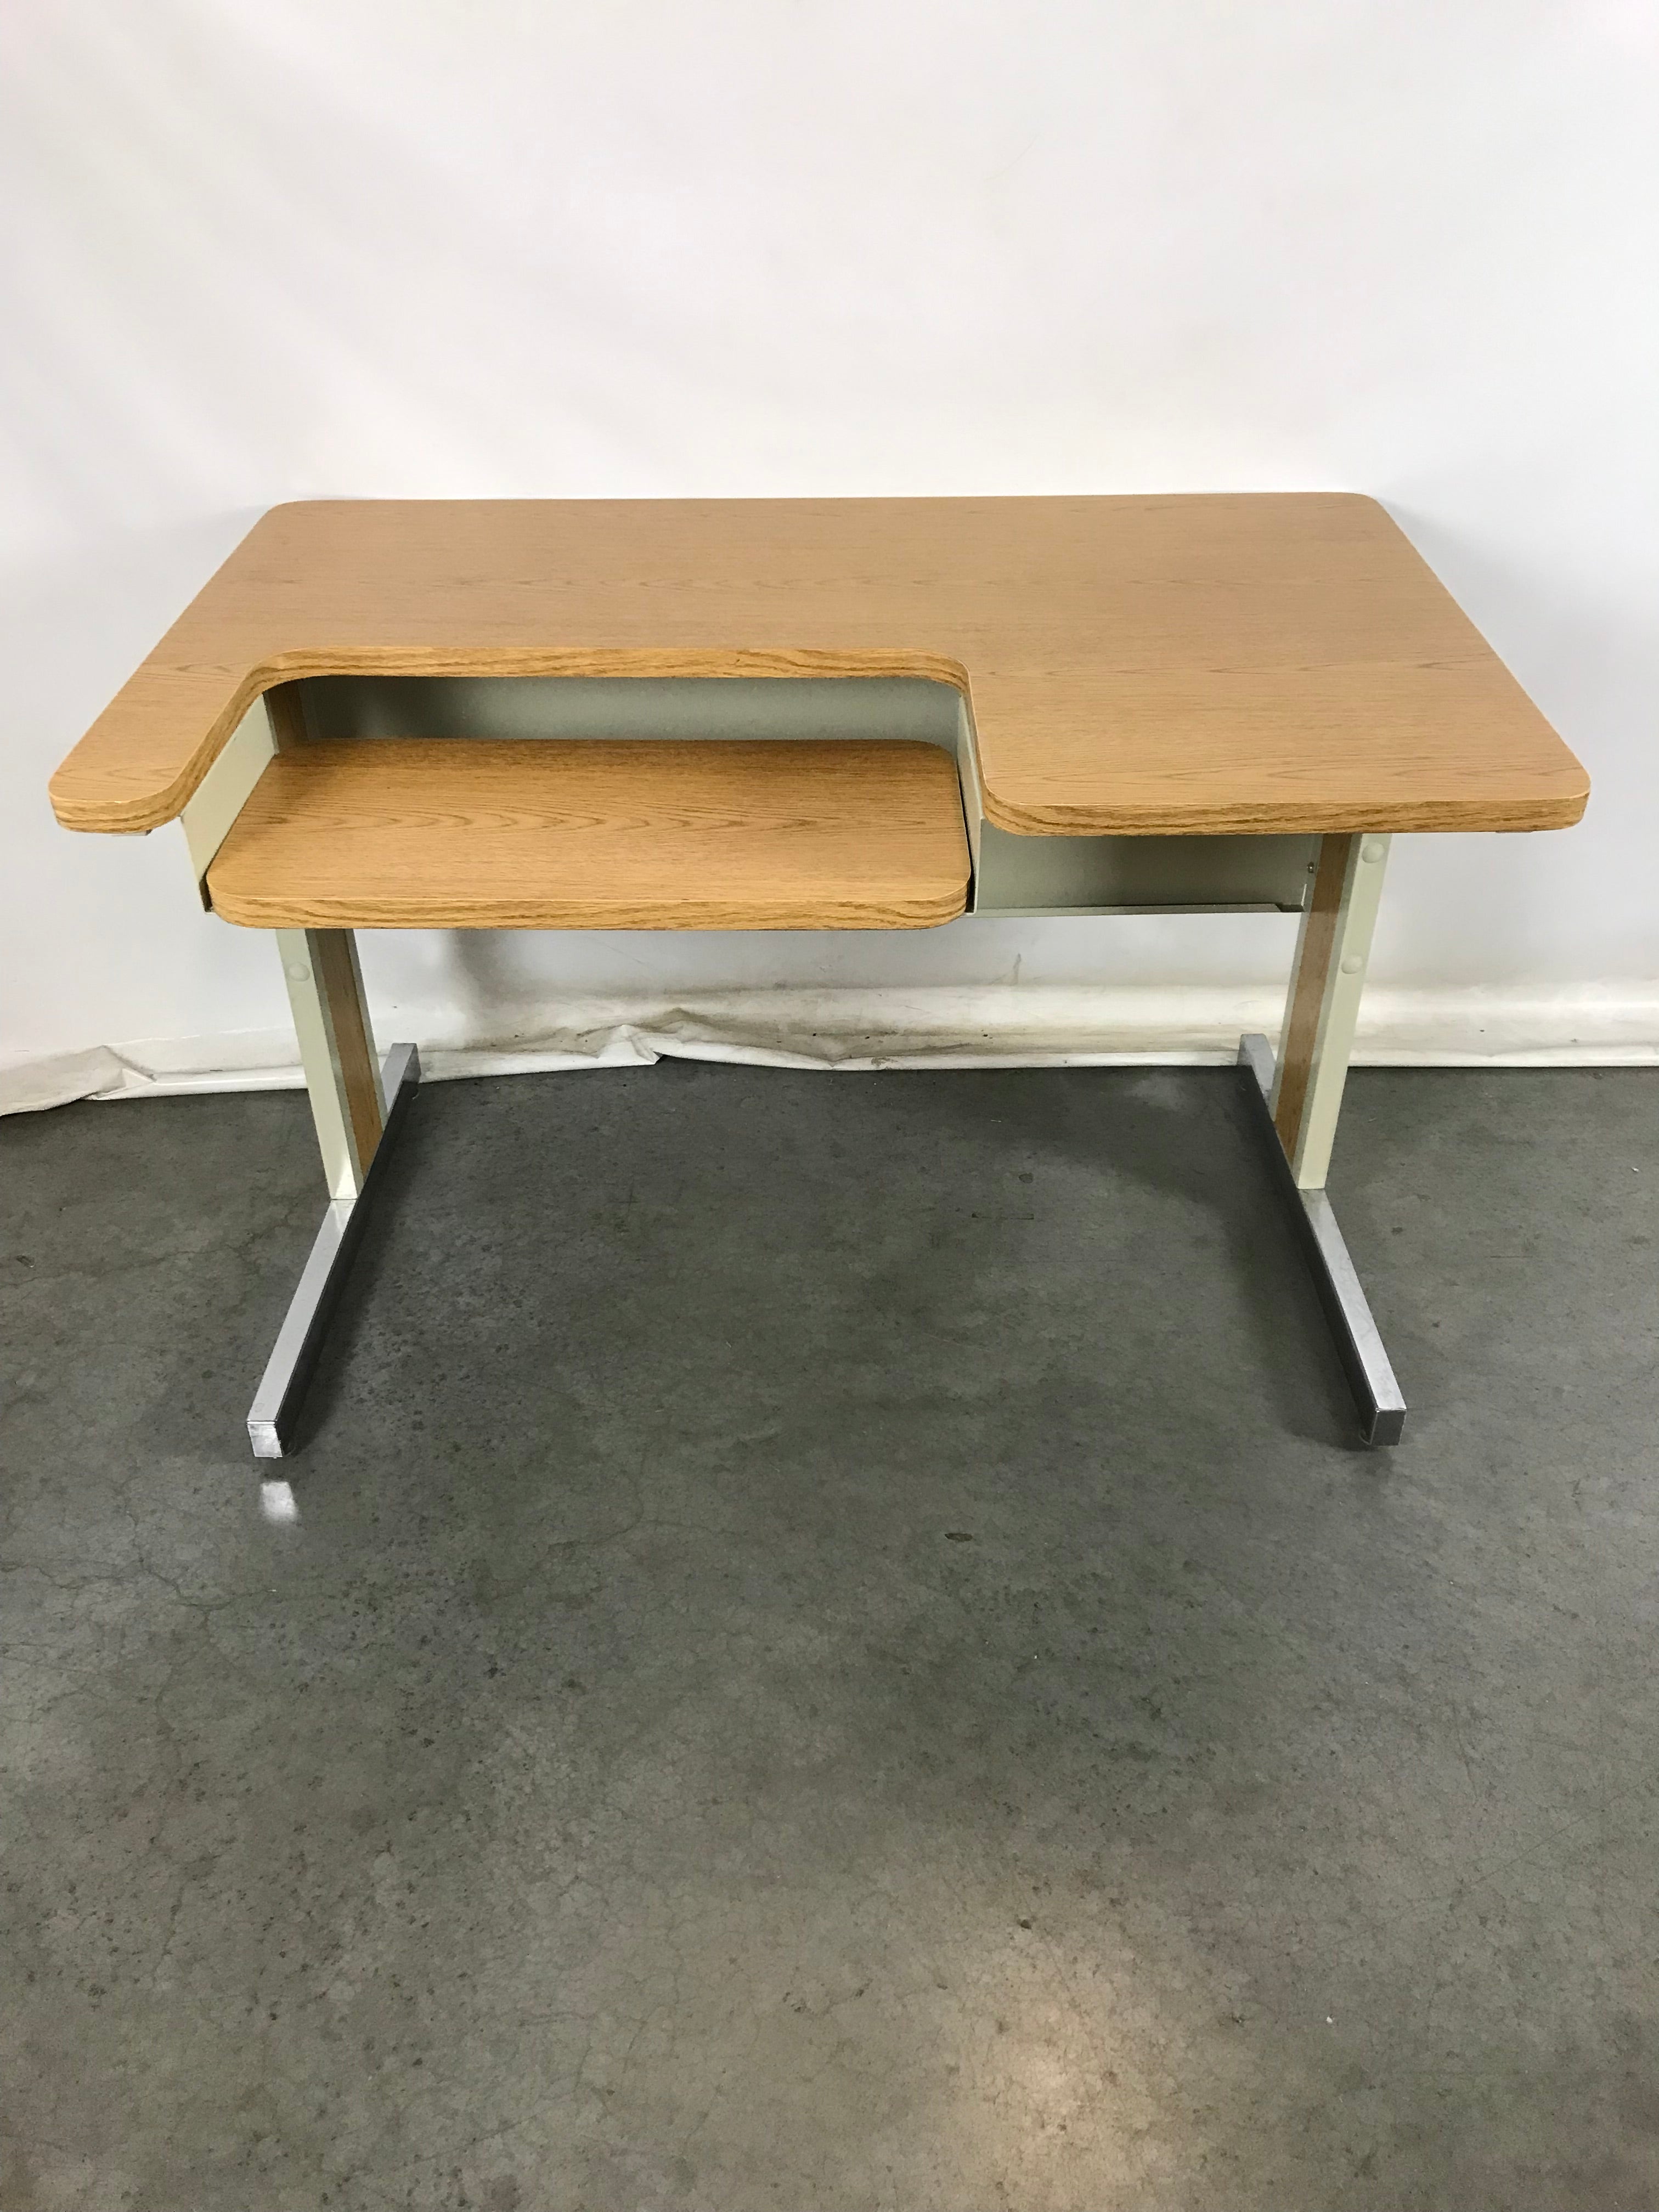 Light Brown Wood Patterned Platform Desk